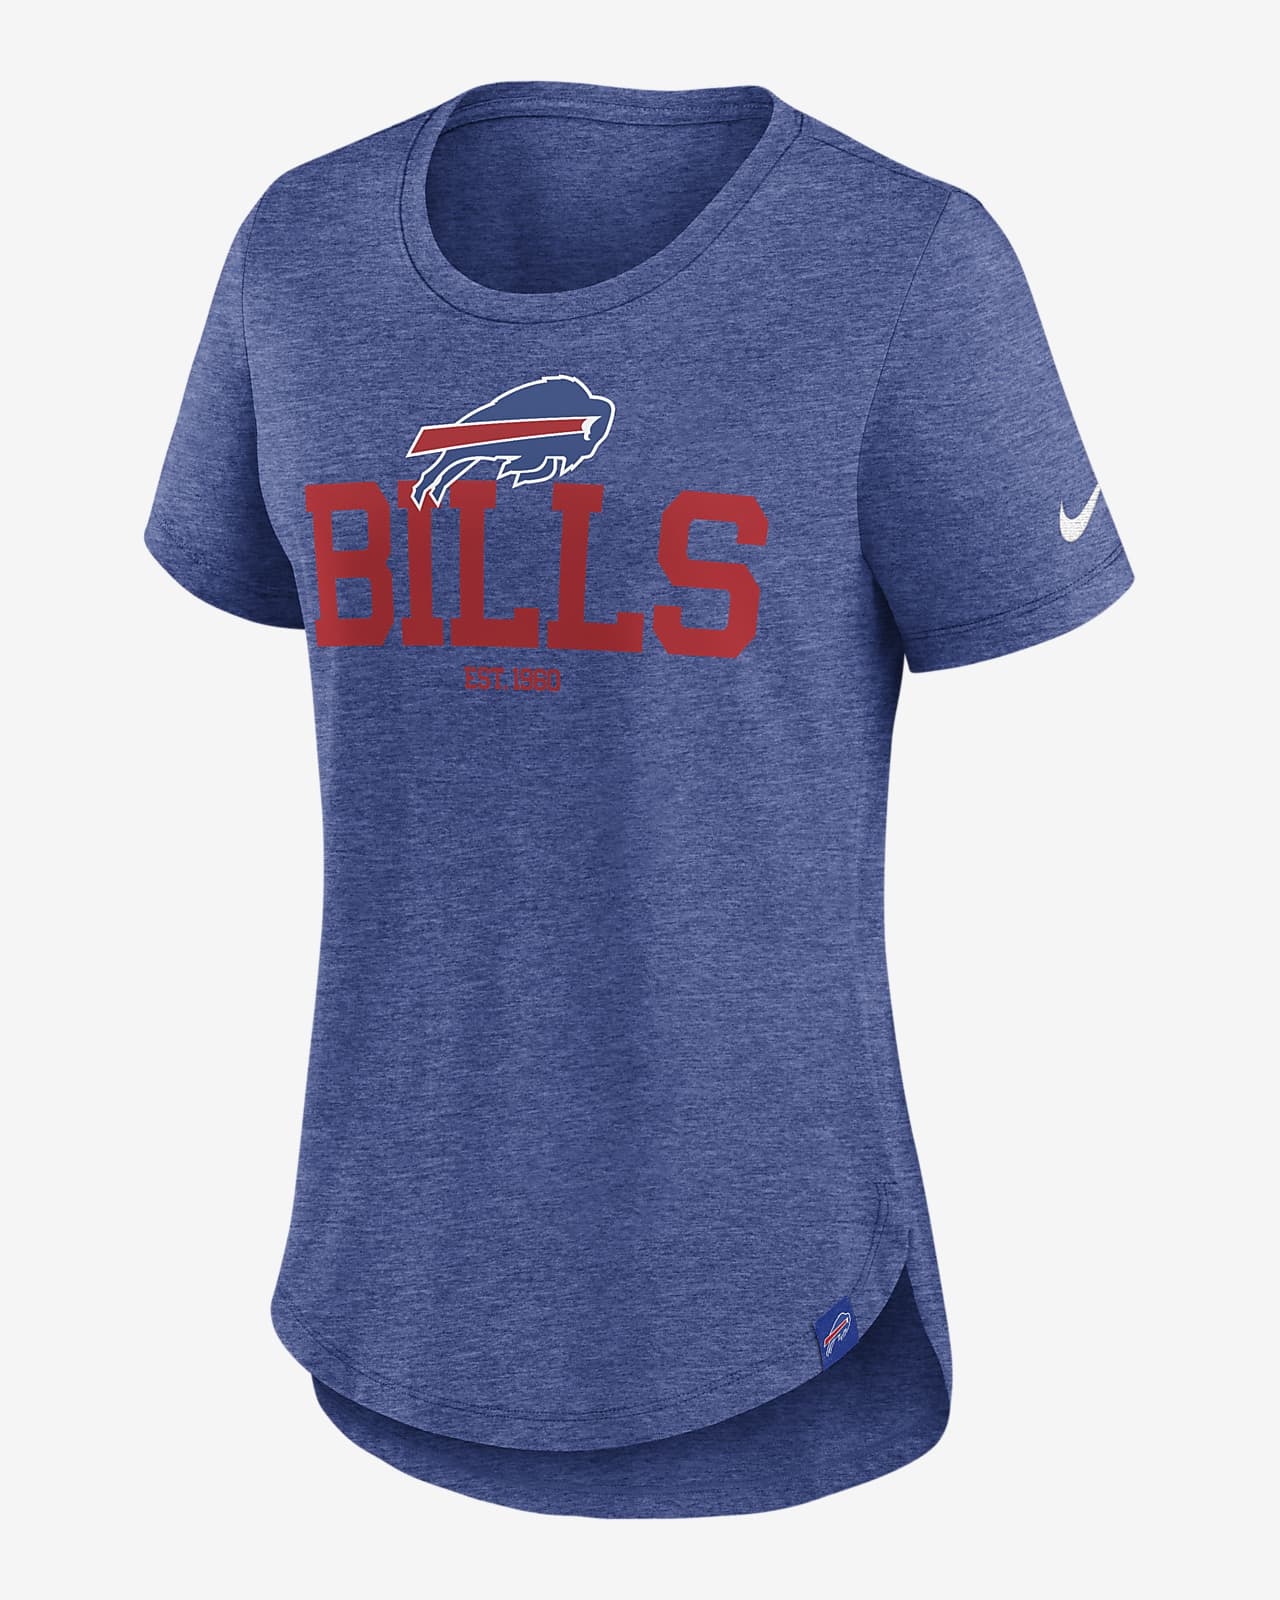 Playera Nike de la NFL para mujer Buffalo Bills